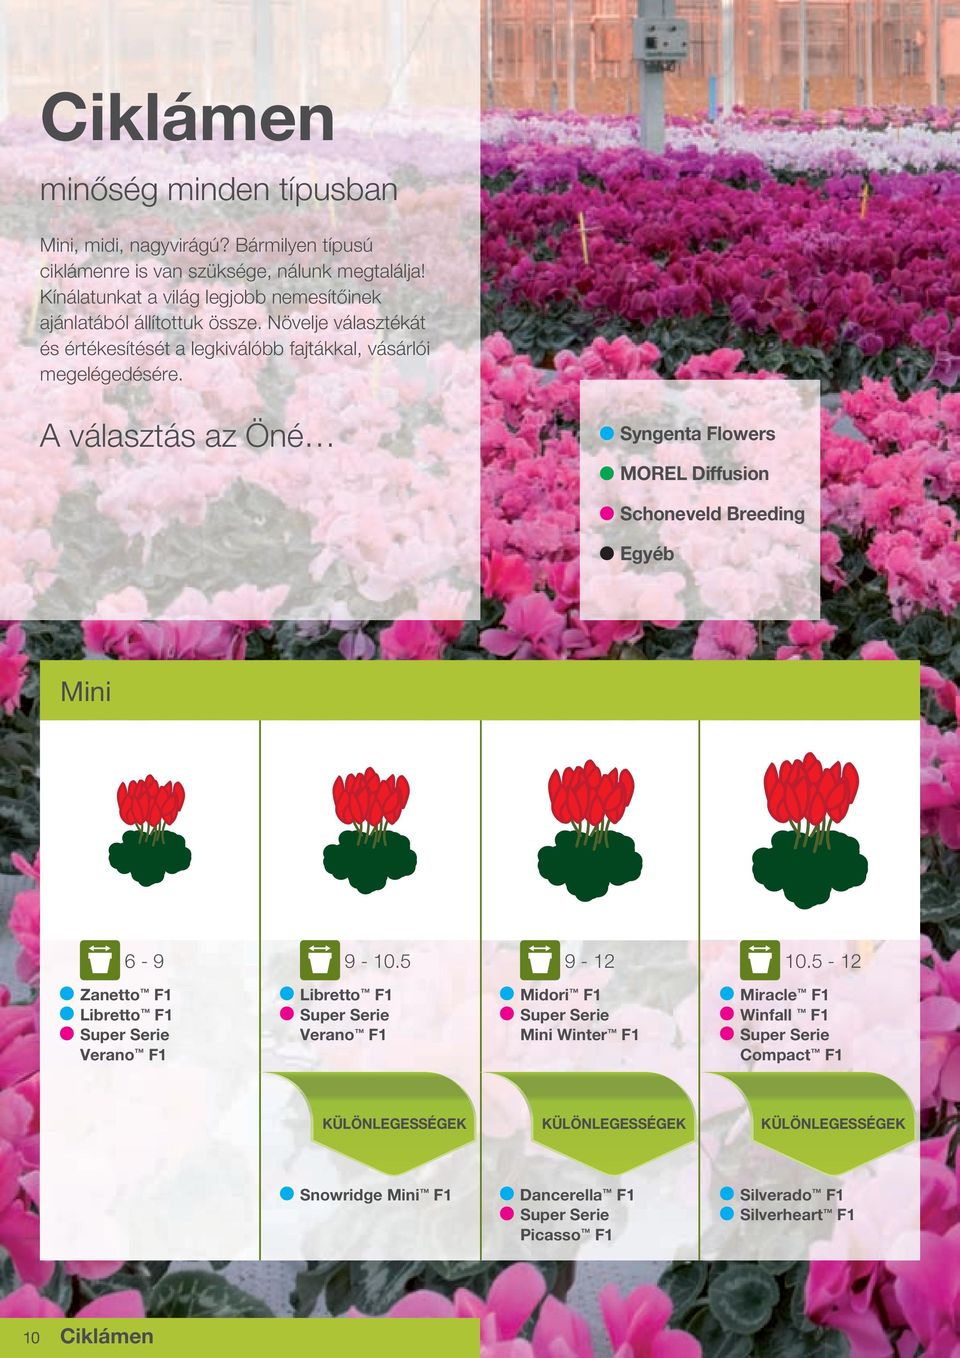 A választás az Öné Syngenta Flowers MOREL Diffusion Schoneveld Breeding Egyéb Mini 6-9 9-10.5 9-1 10.